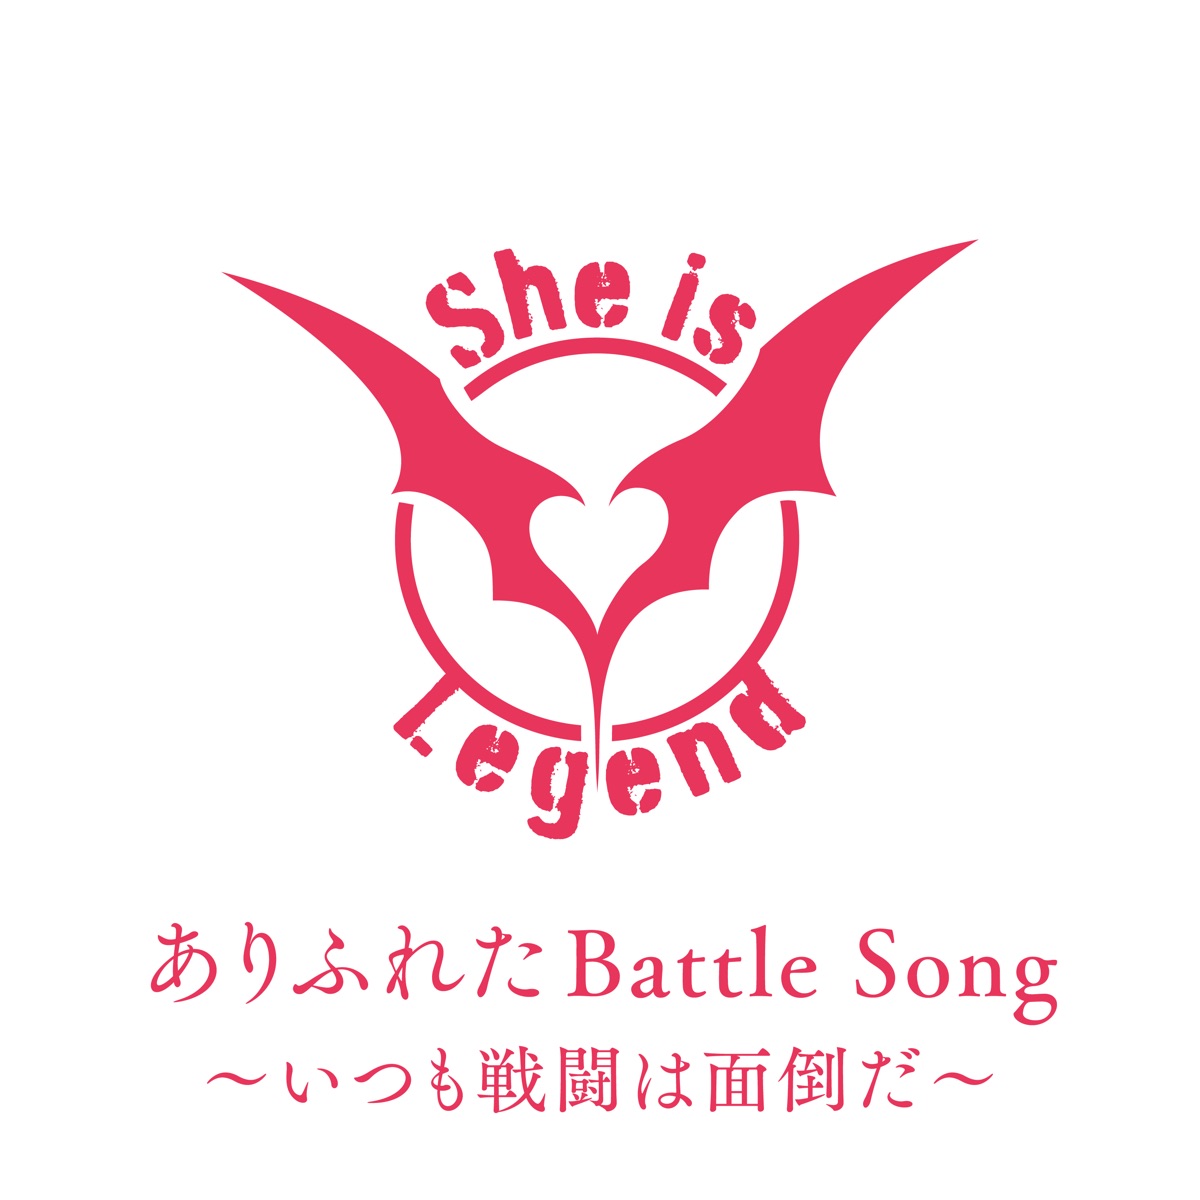 『She is Legend - ありふれたBattle Song～いつも戦闘は面倒だ～ 歌詞』収録の『ありふれたBattle Song～いつも戦闘は面倒だ～』ジャケット